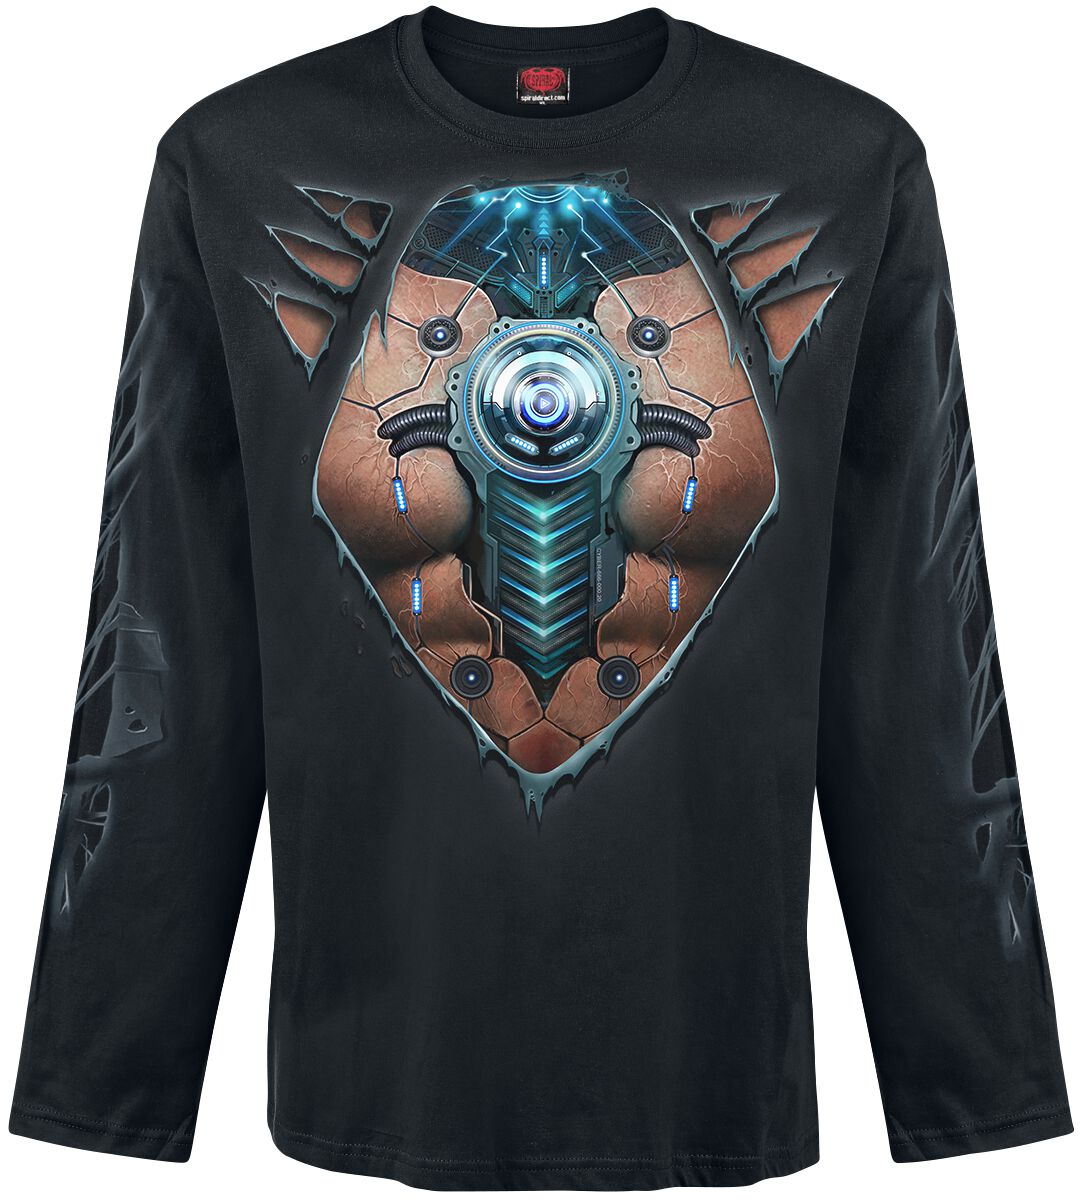 Spiral Langarmshirt - Cyber Skin - M bis XXL - für Männer - Größe XL - schwarz